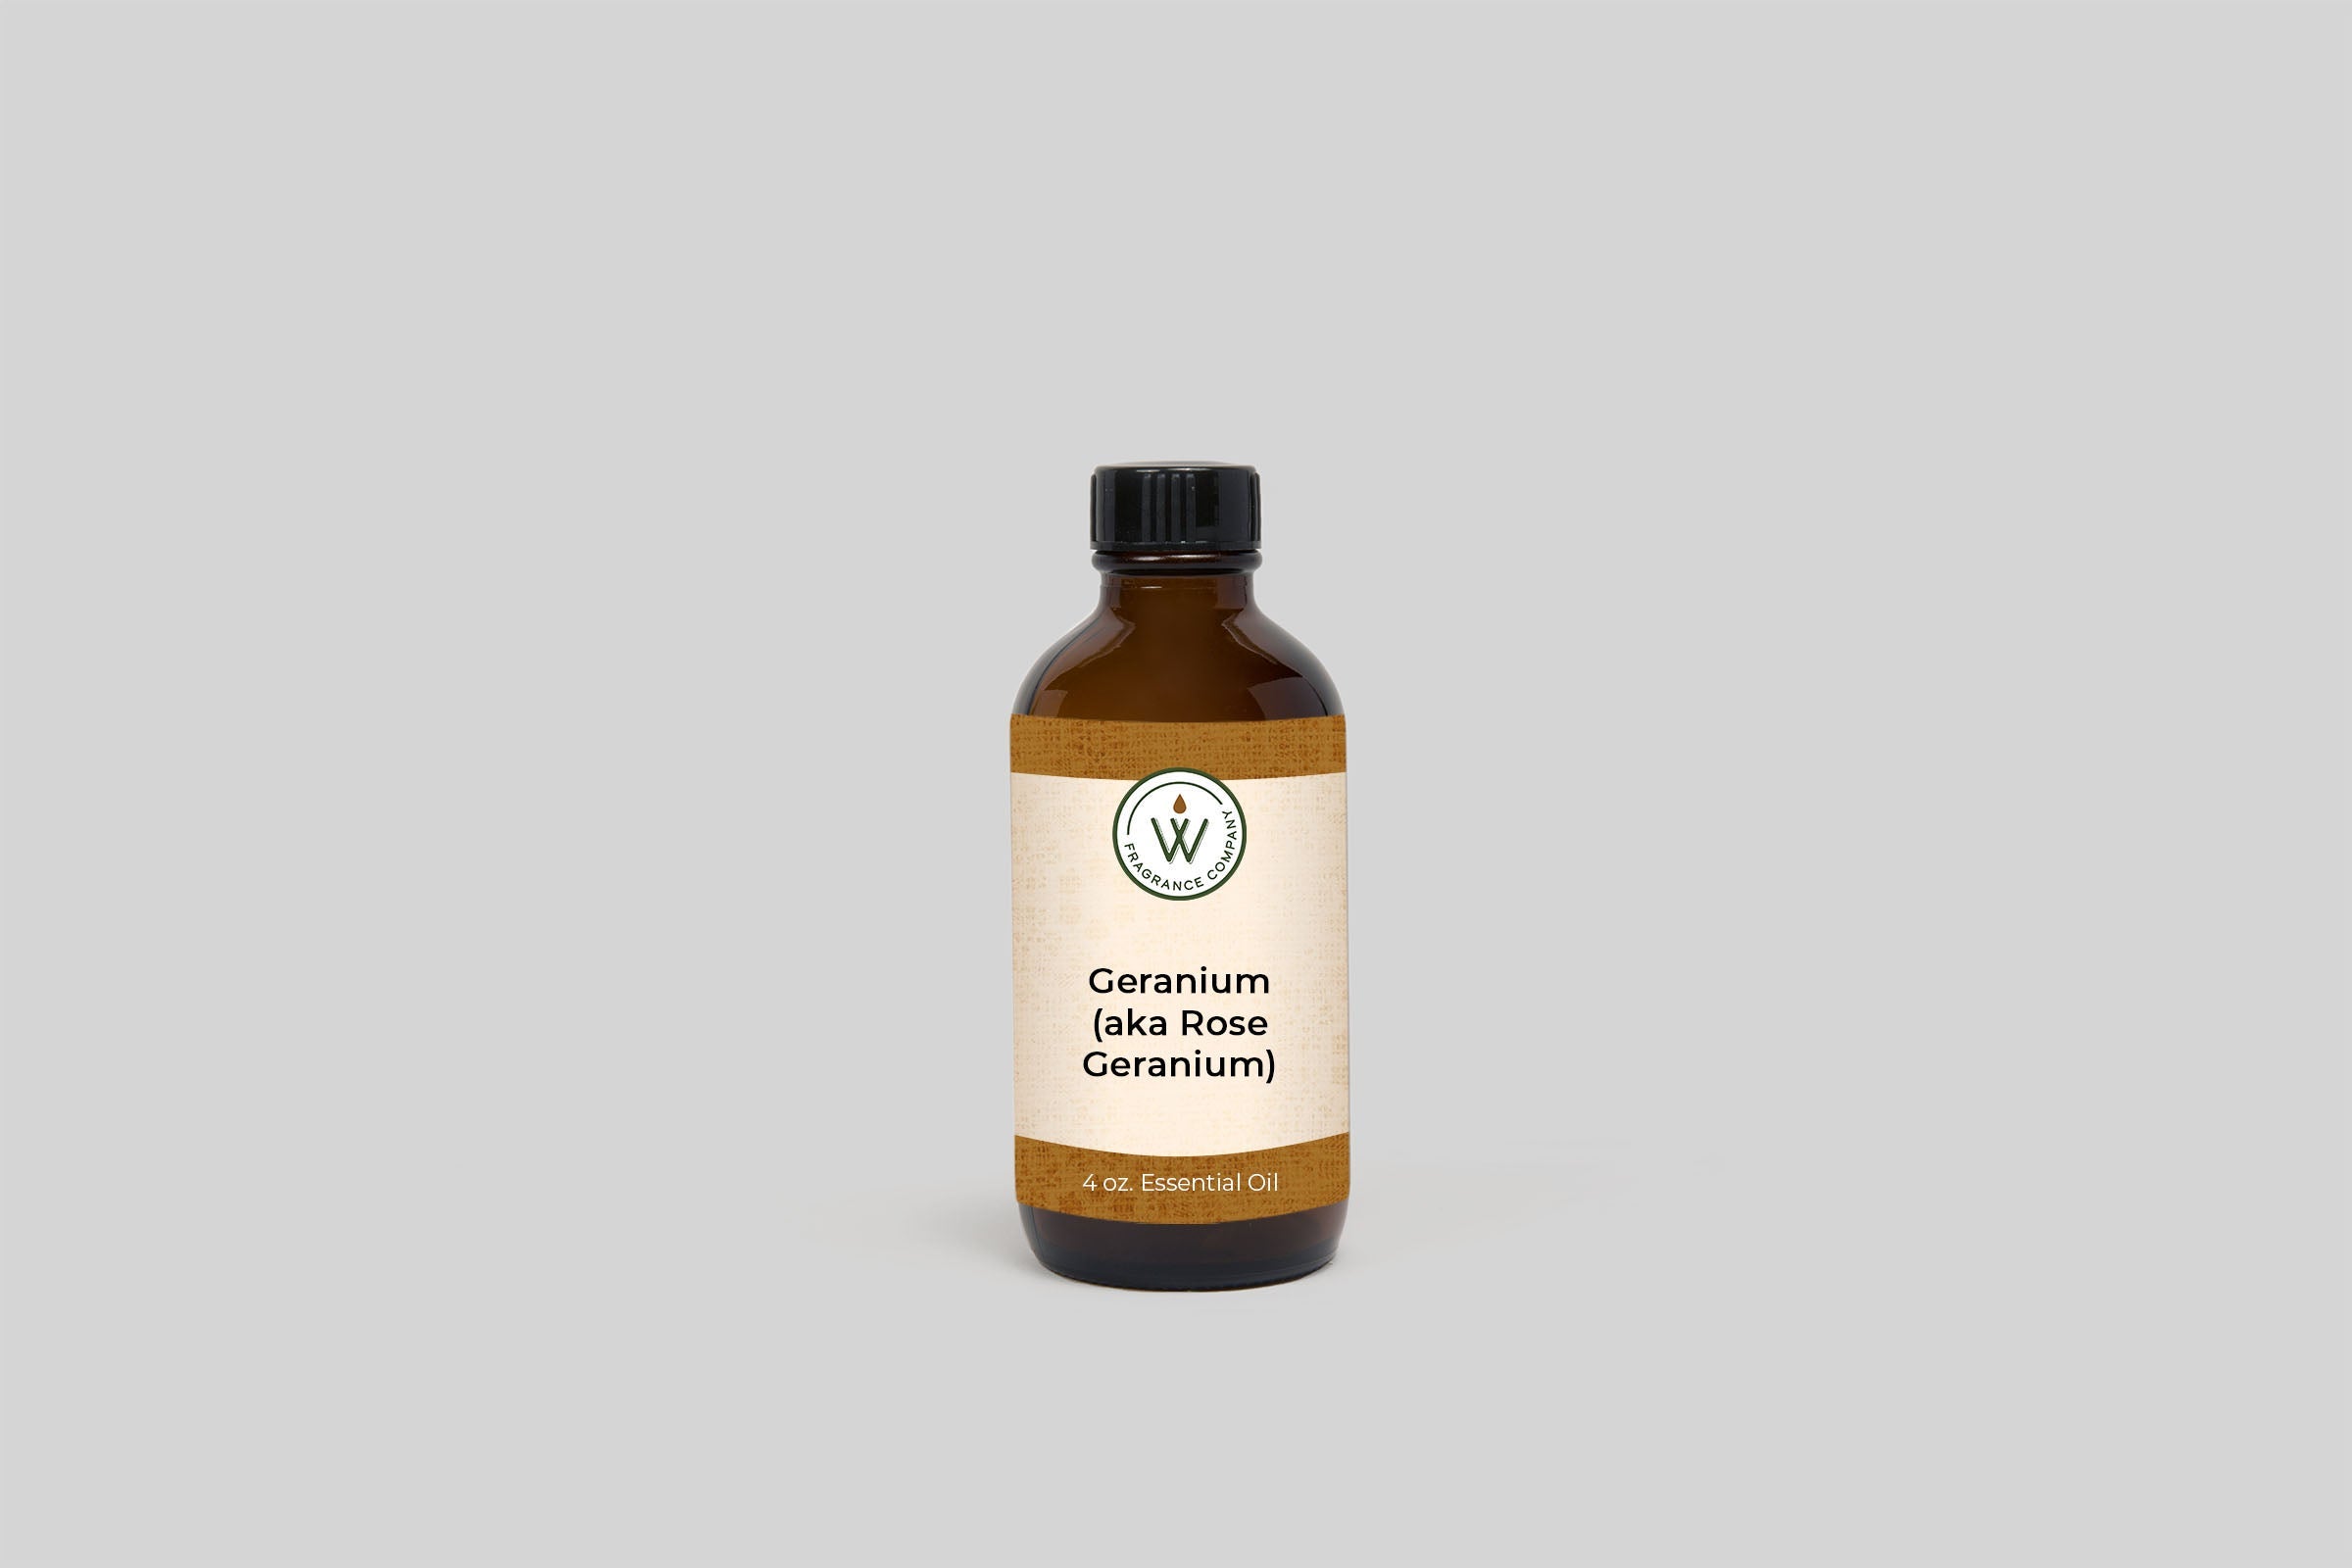 Geranium Essential Oil (aka Rose Geranium)